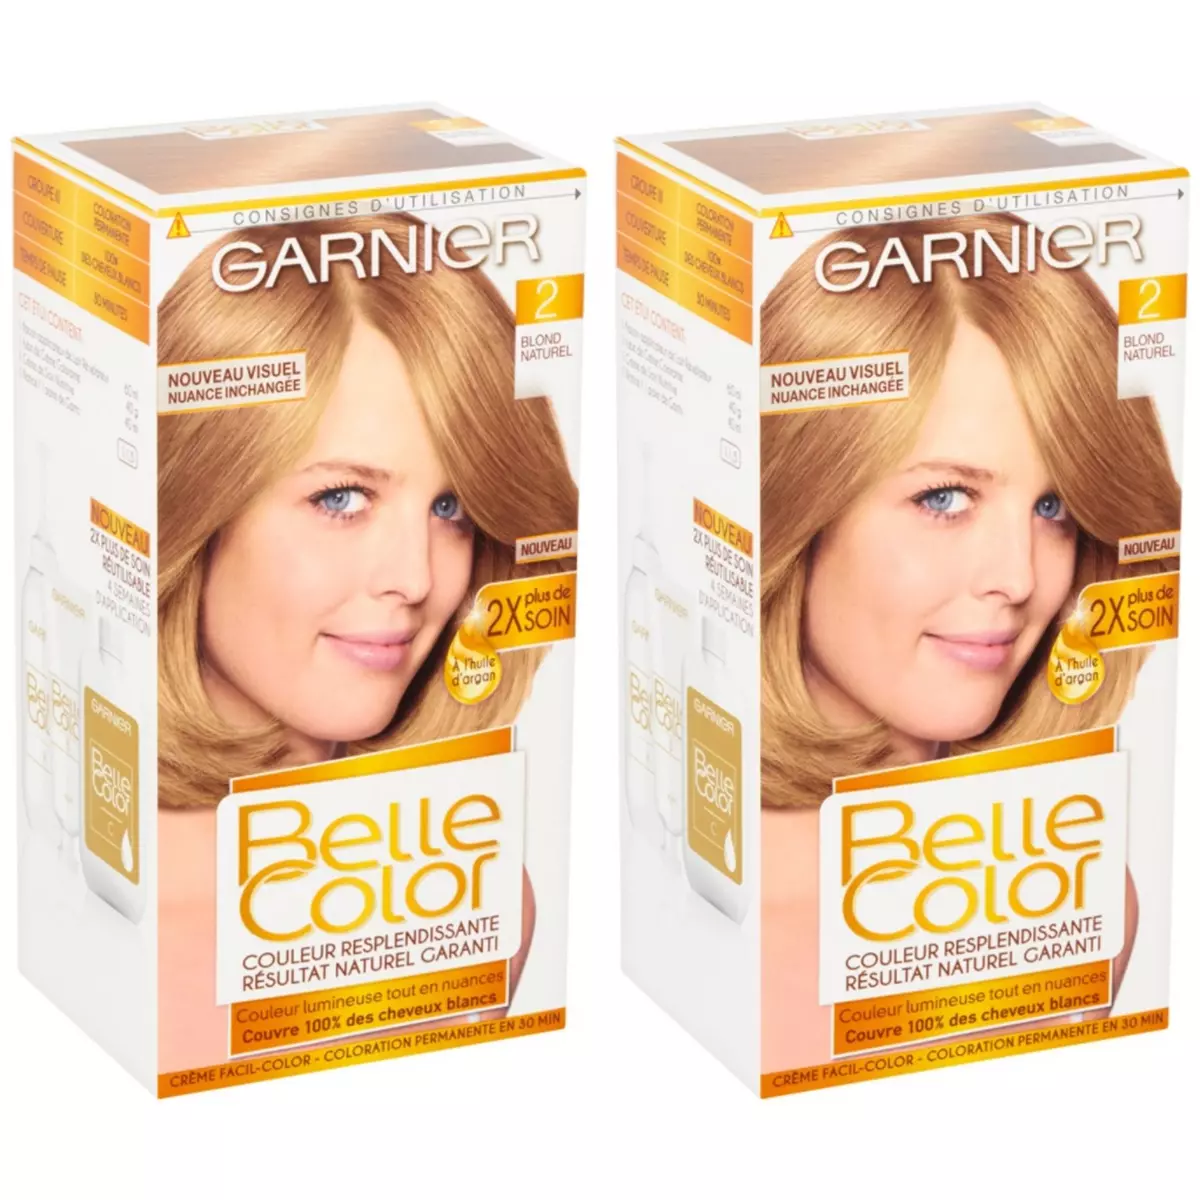 GARNIER Lot de 2 BELLE COLOR Coloration Permanente Résultat Naturel - Couleur Resplendissante 02 Blond Naturel